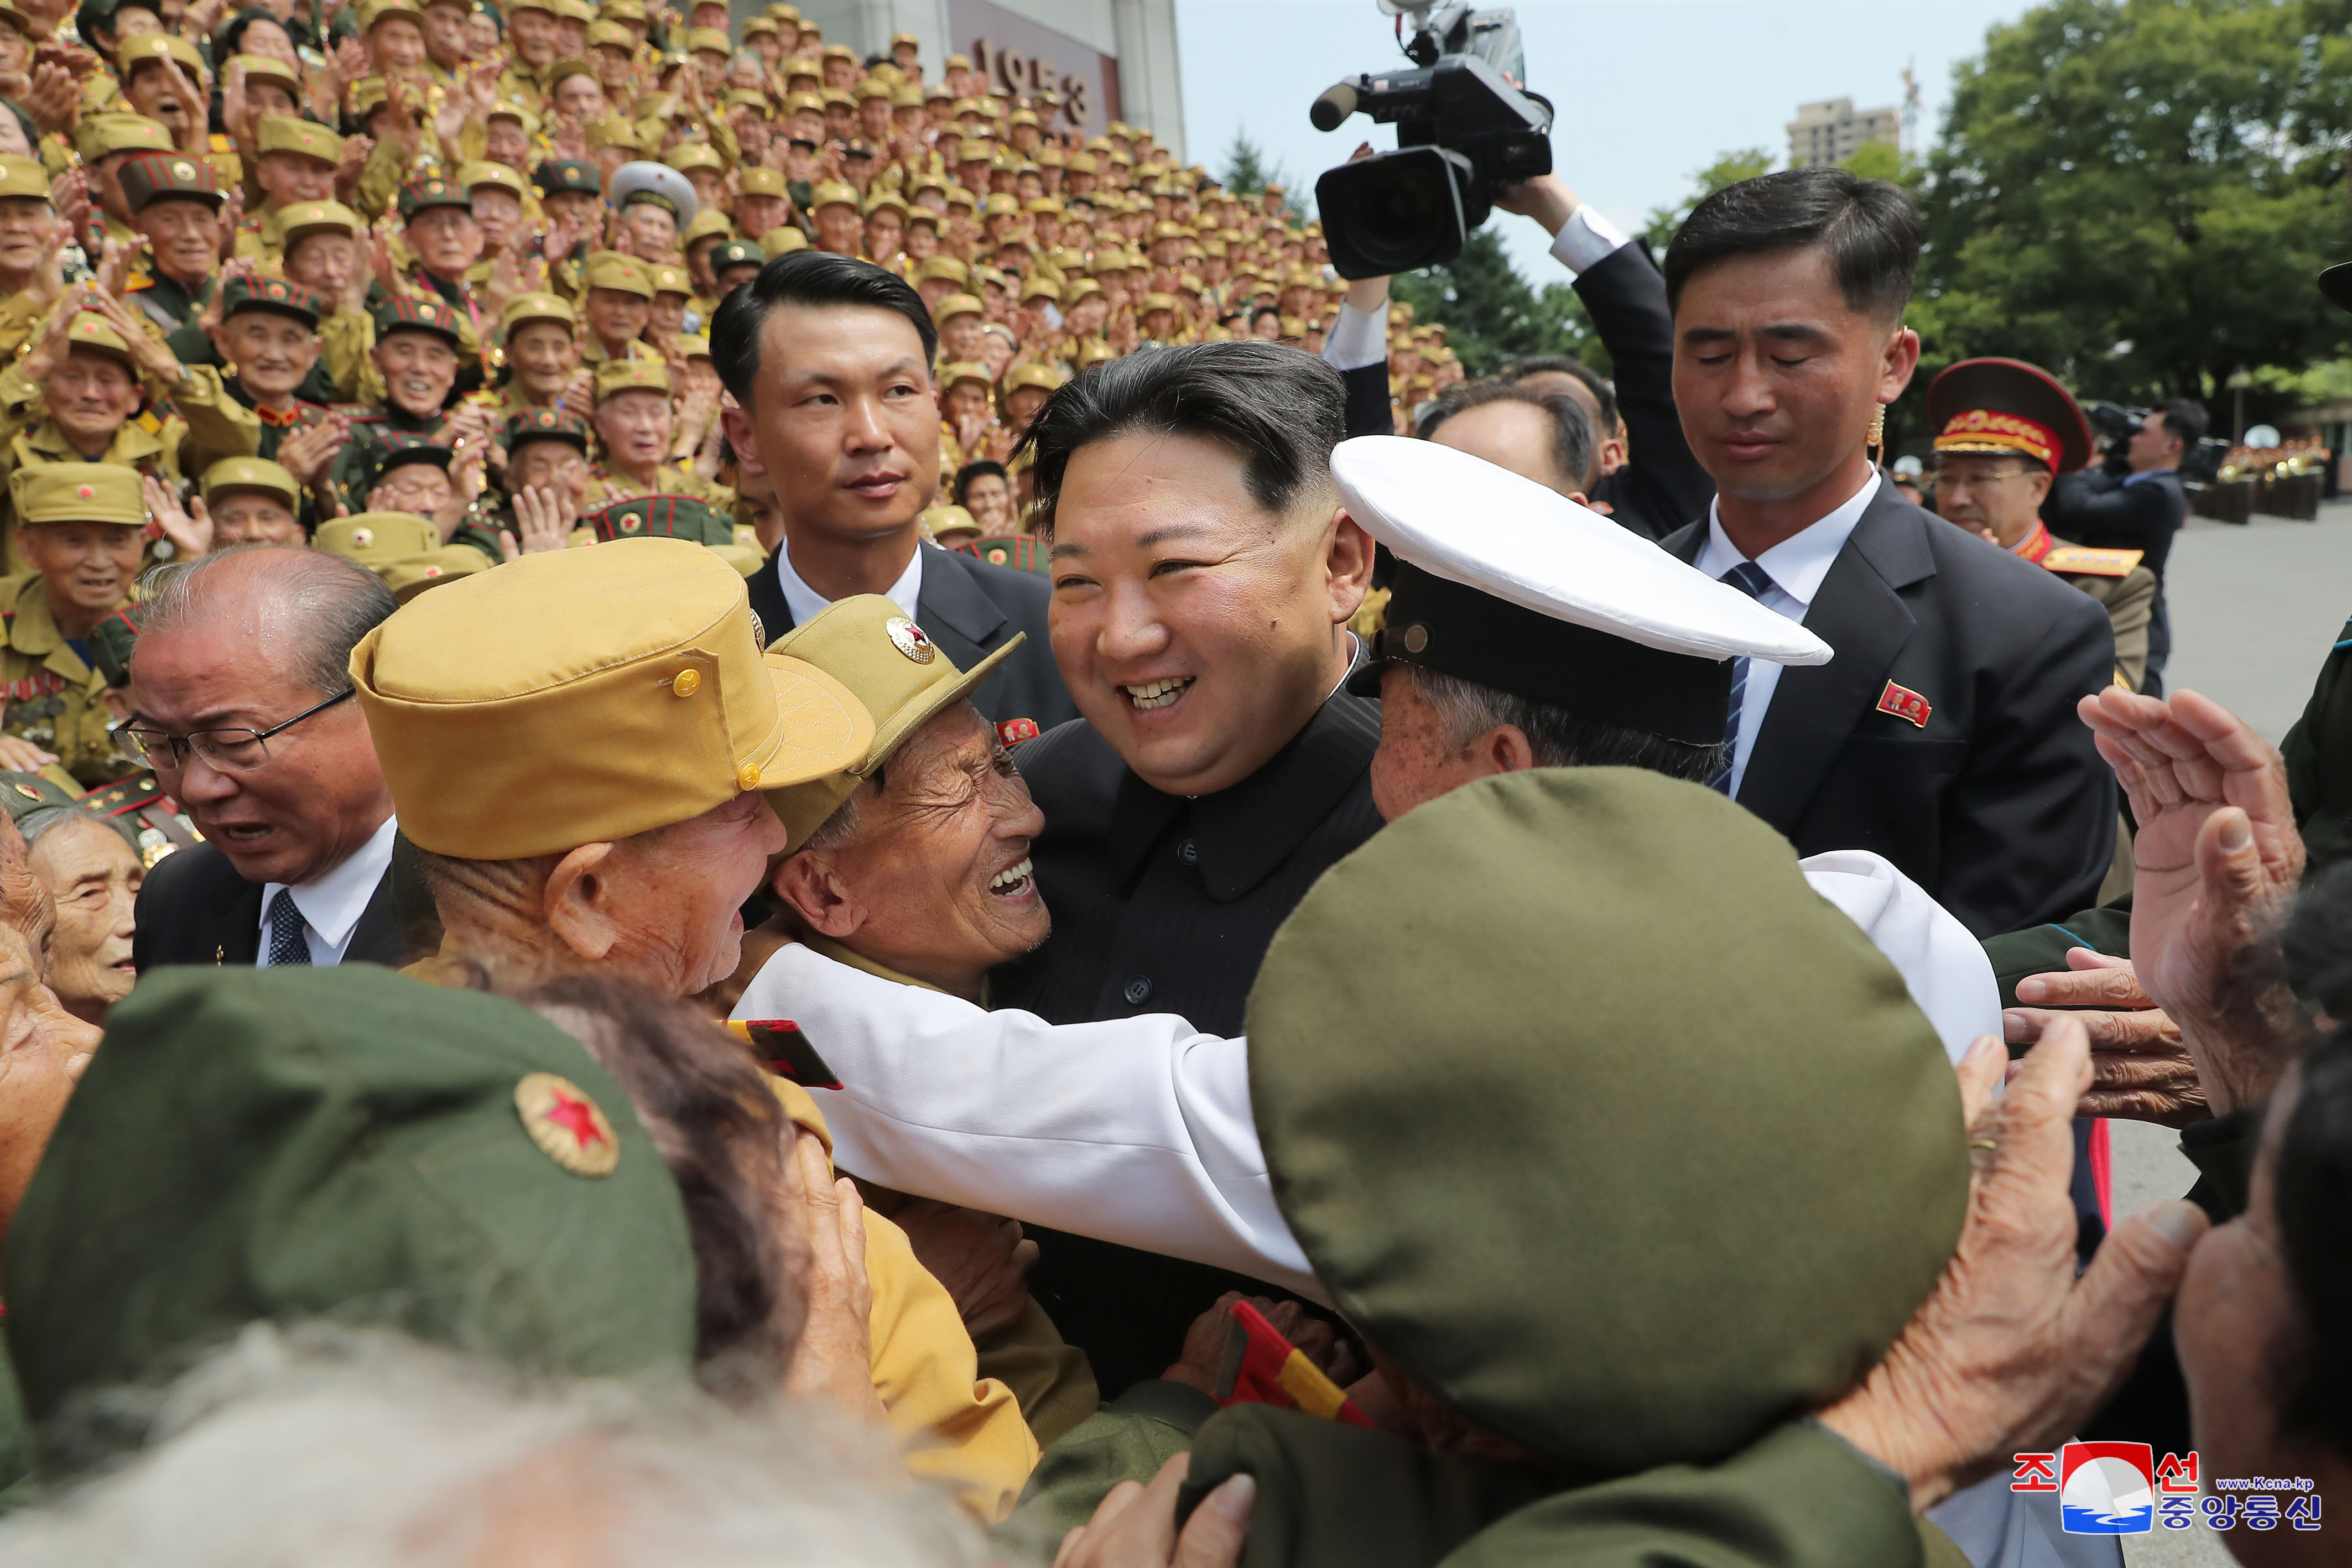 김정은 북한 국무위원장이 정전협정 체결 69주년(전승절) 기념 노병대회에서 참가자들과 노 마스크로 기념사진을 찍고 있다 (출처 : 조선중앙통신, 7월 29일)